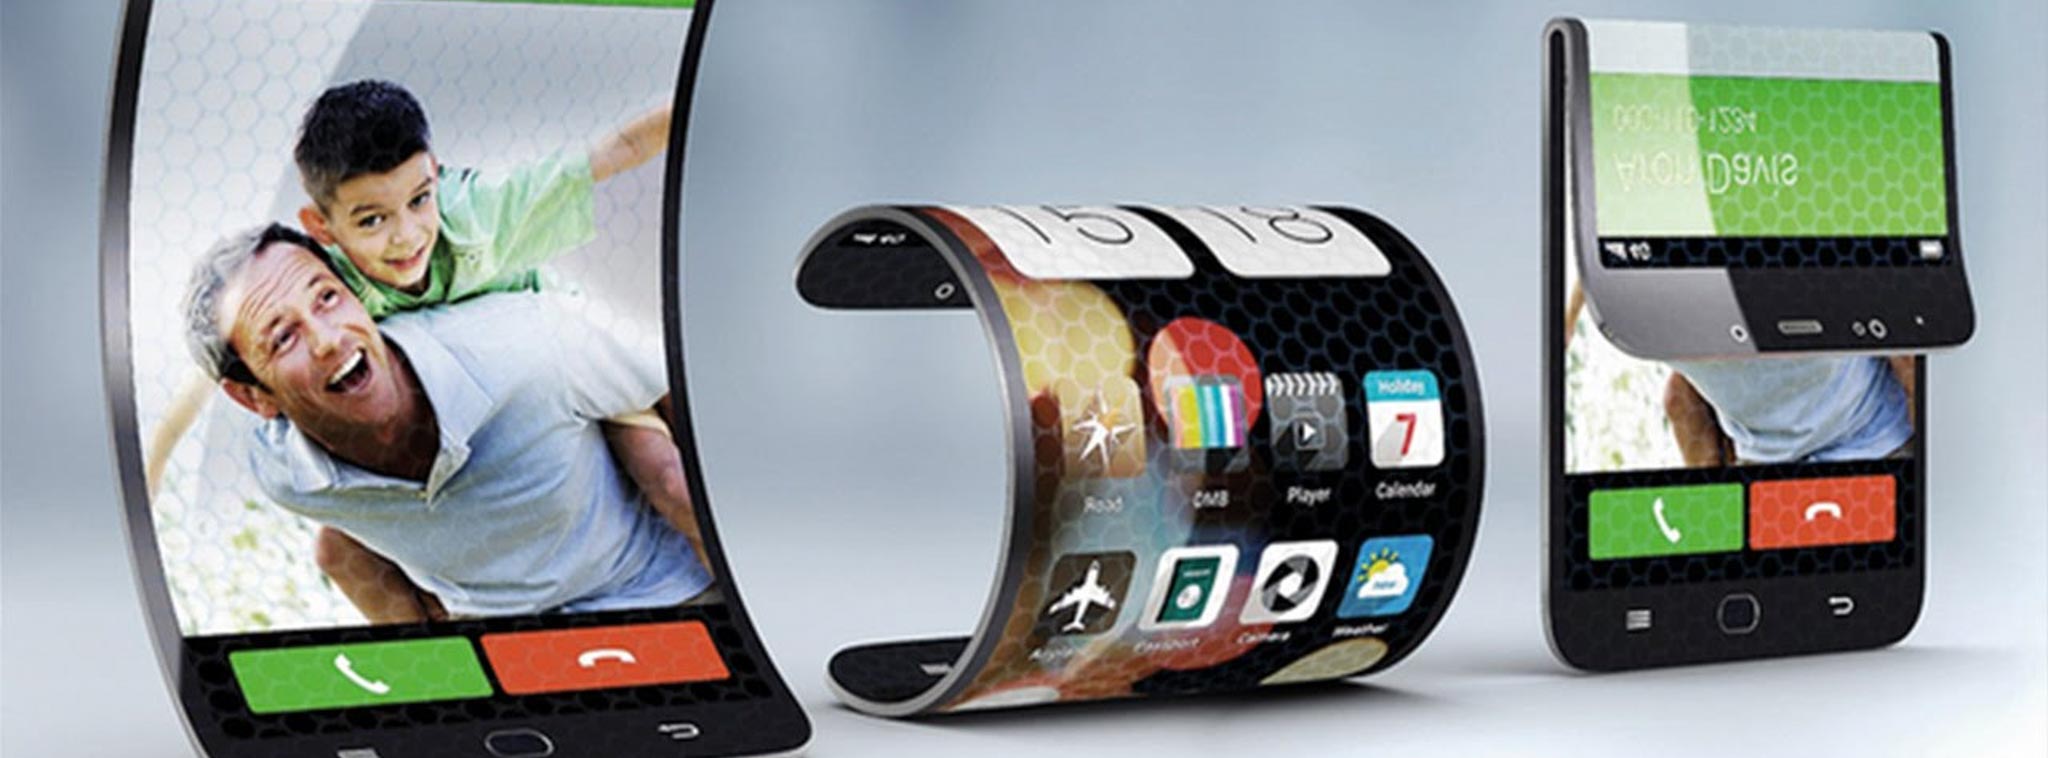 Samsung sẽ bắt đầu sản xuất điện thoại màn hình gập từ tháng 11